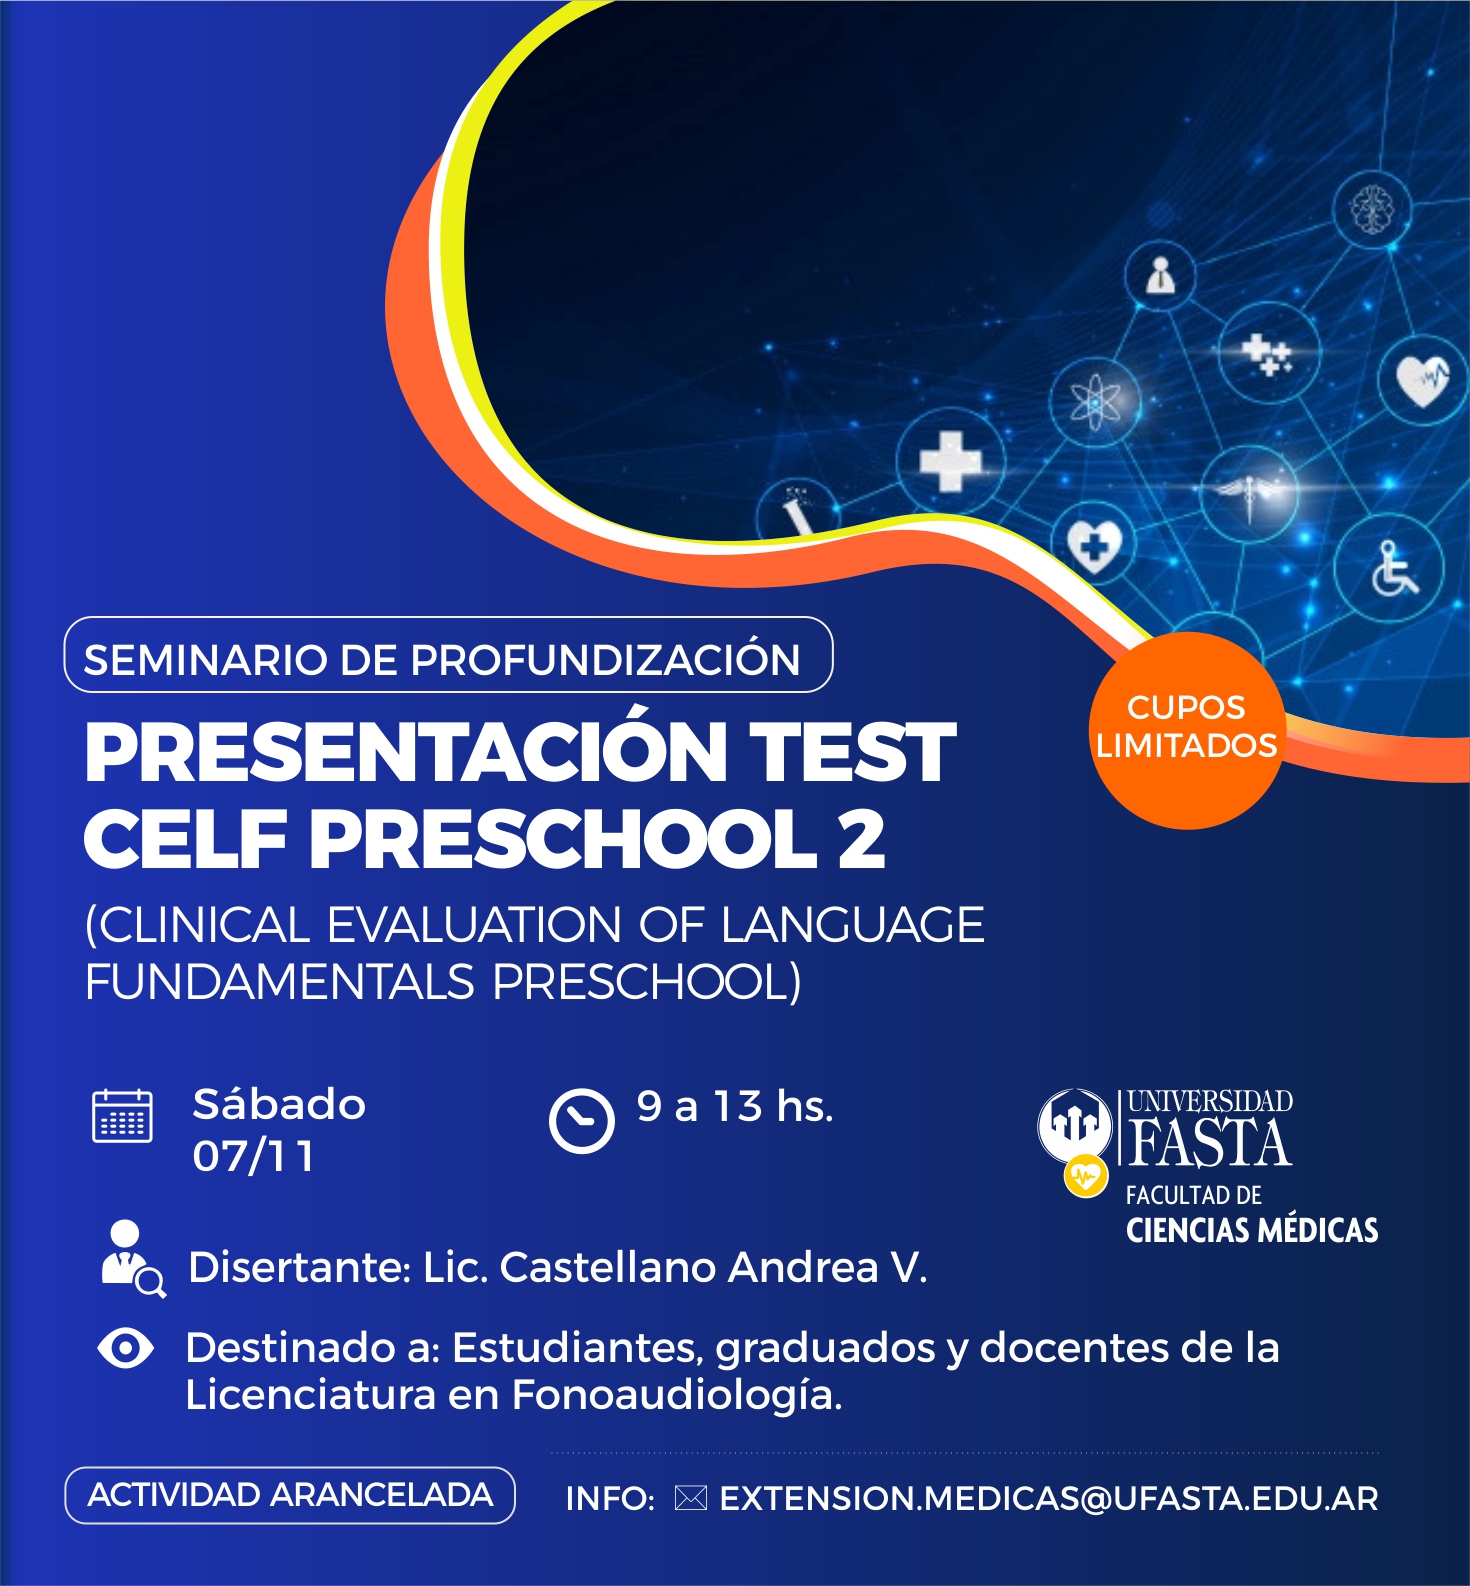 Seminario de Profundización "Presentación Test CELF Preschool 2 (Clinical Evaluation of Language Fundamentals Preschool)"